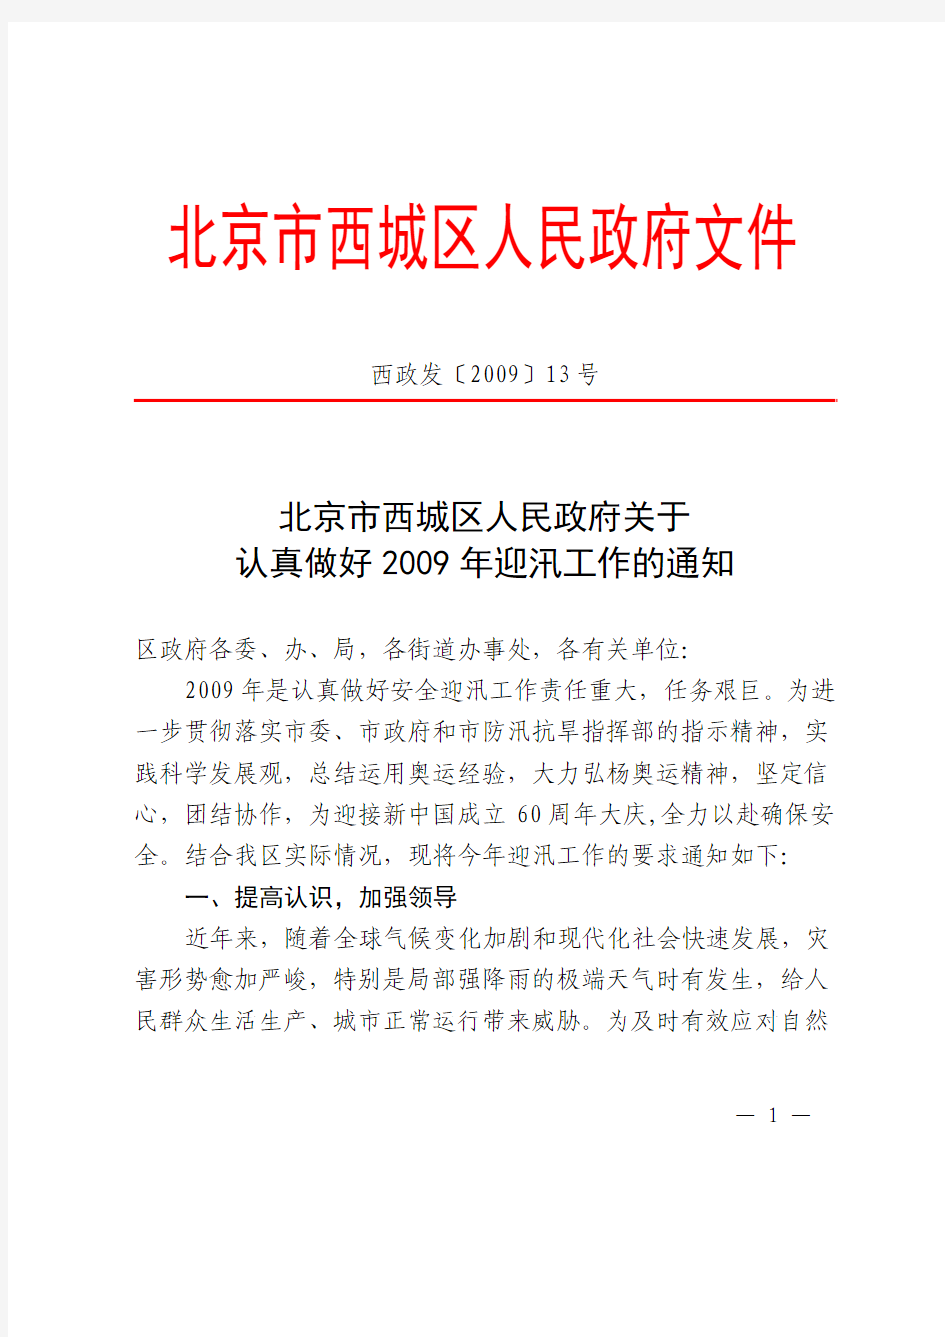 北京市西城区人民政府关于认真做好2009年迎汛工作的通知